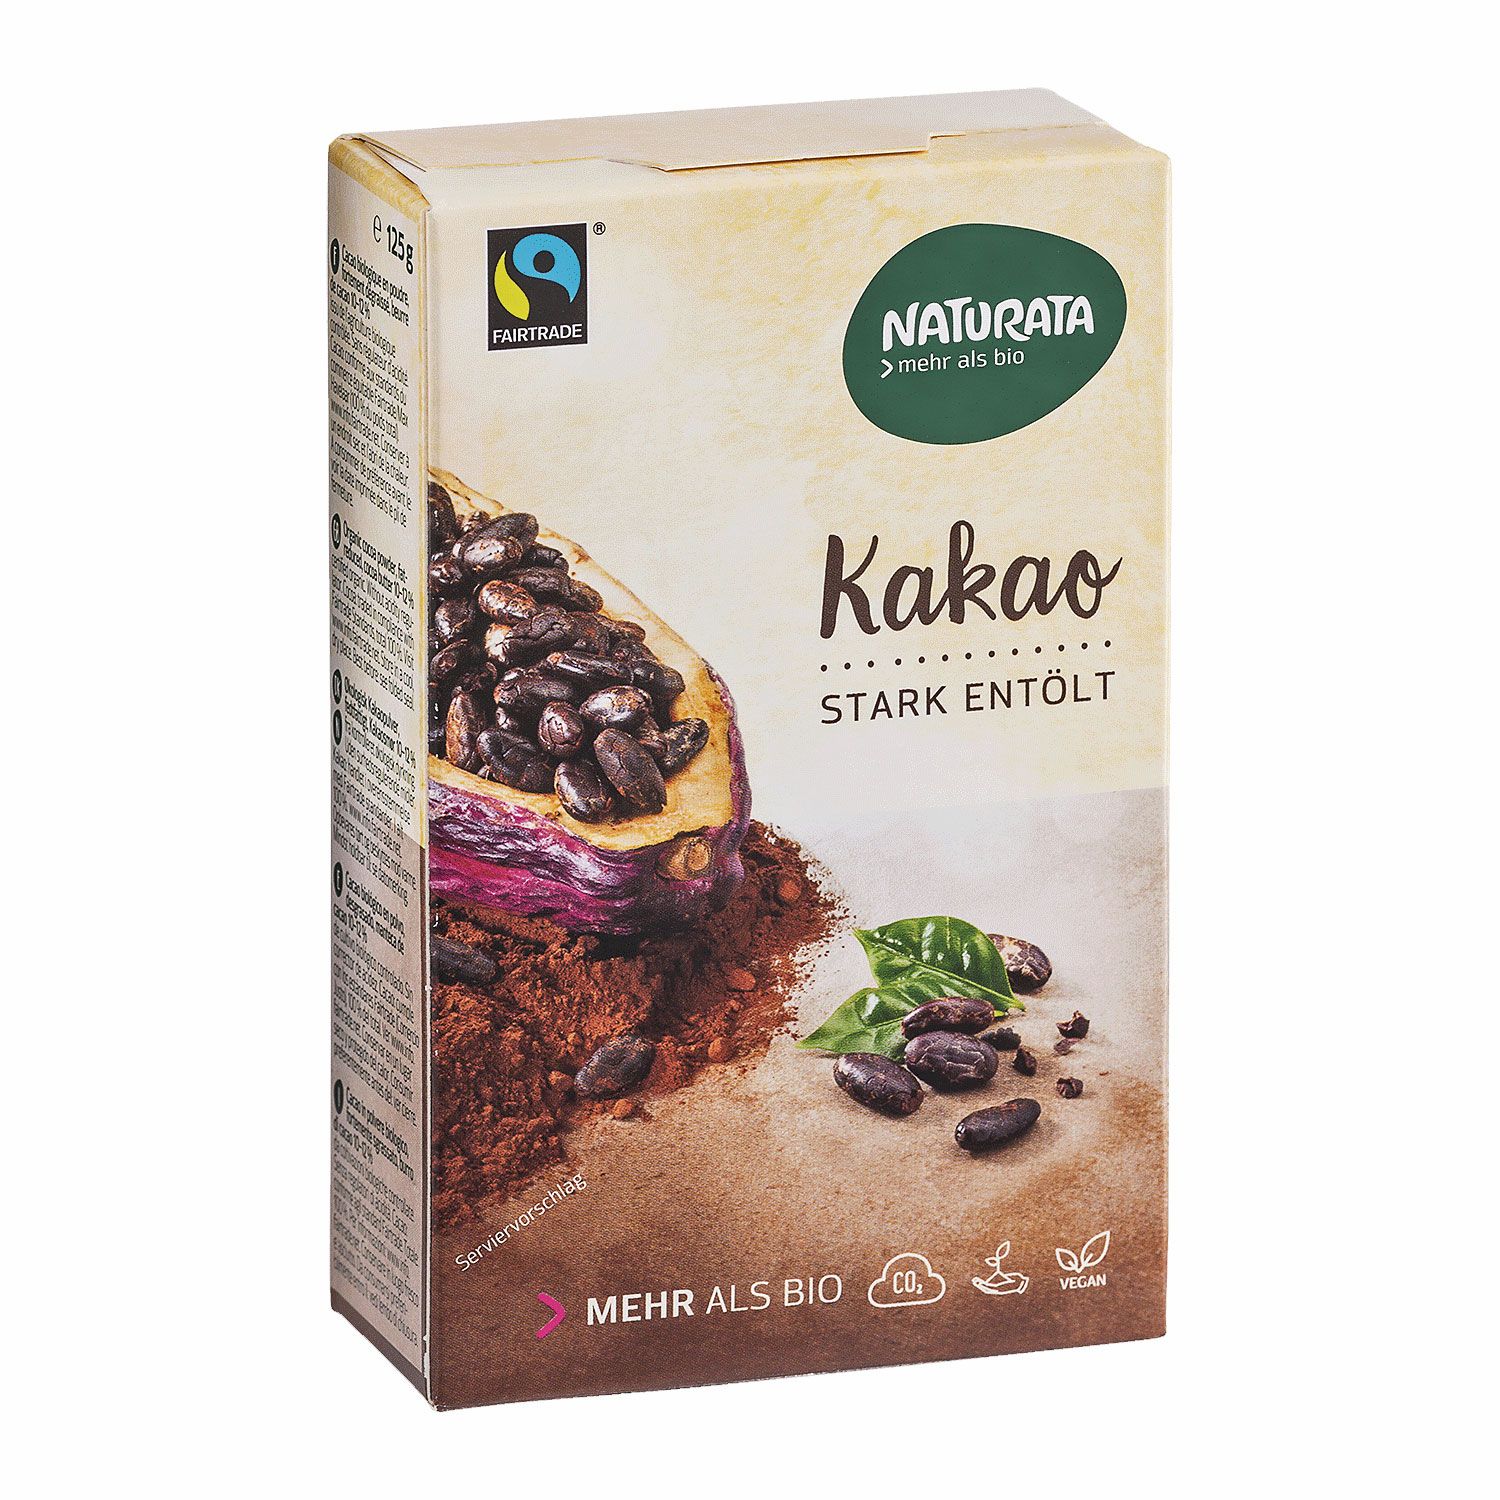 Naturata Bio Kakao stark entölt Fairtrade